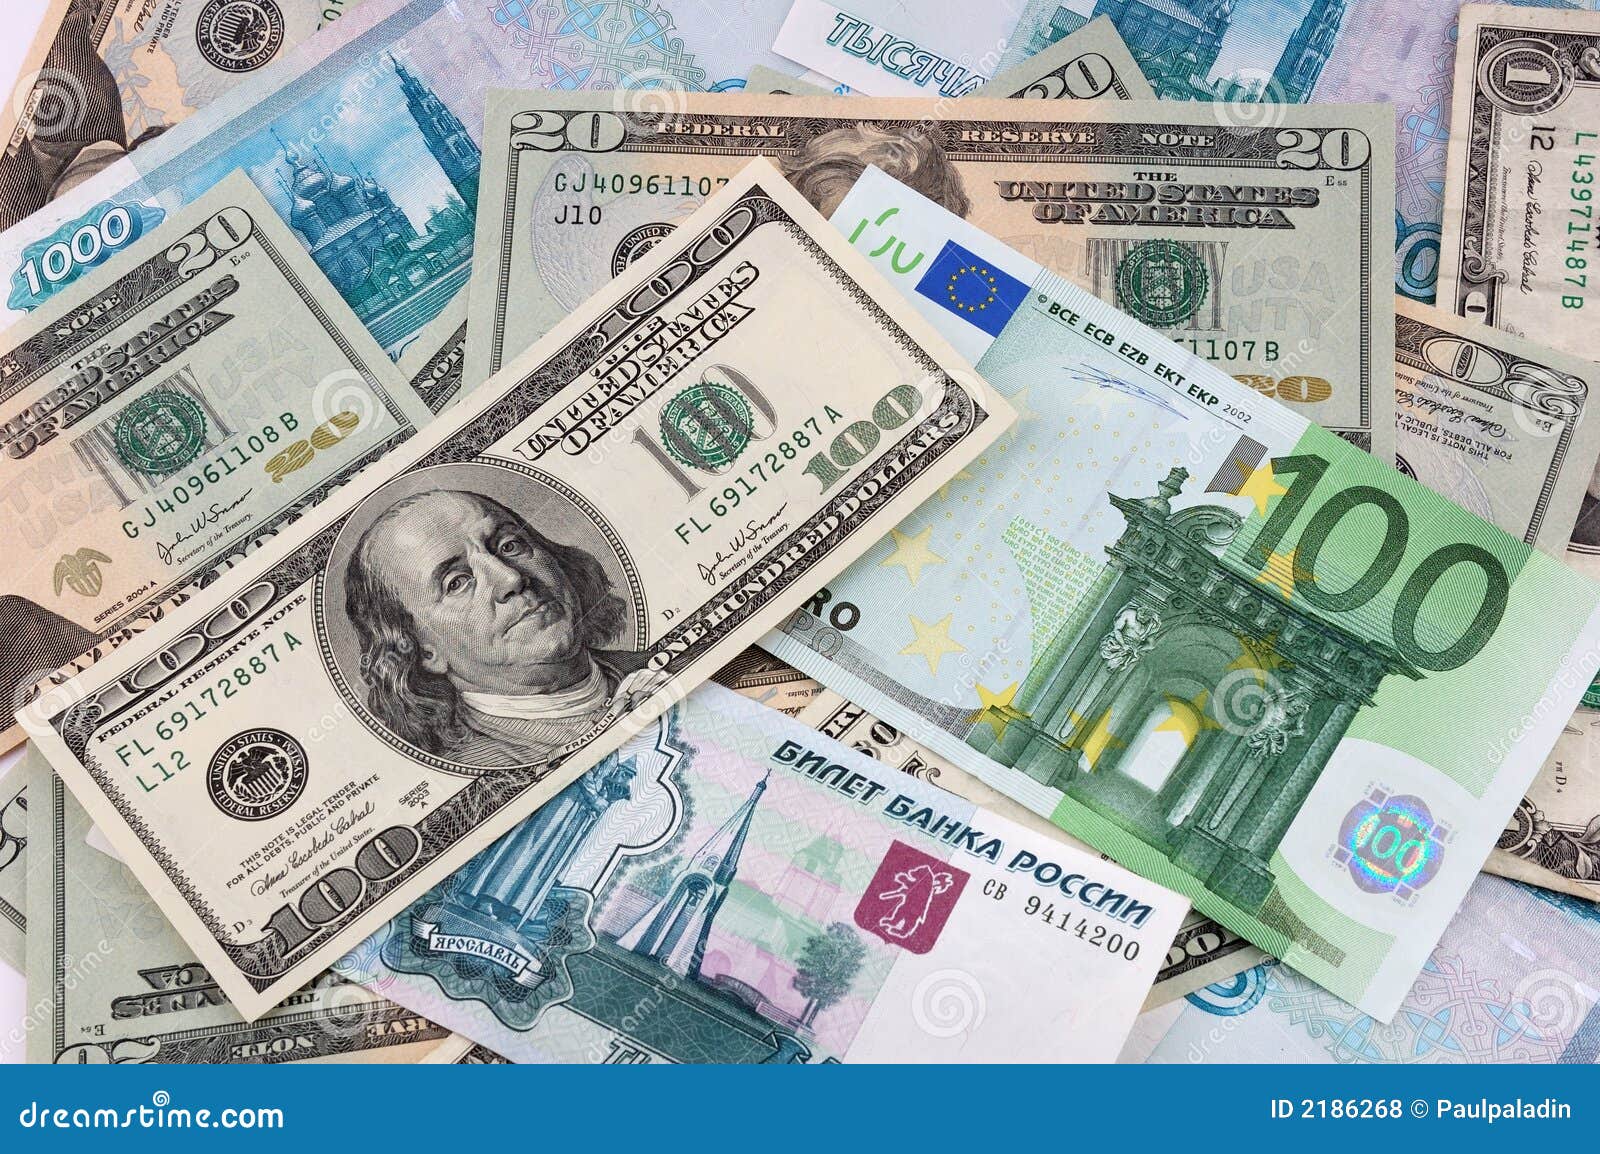 Лучше брать доллары или евро. Доллар и евро. Доллар и евро рисунок. Купюры евро и доллара. Купюры евро доллары рубли.